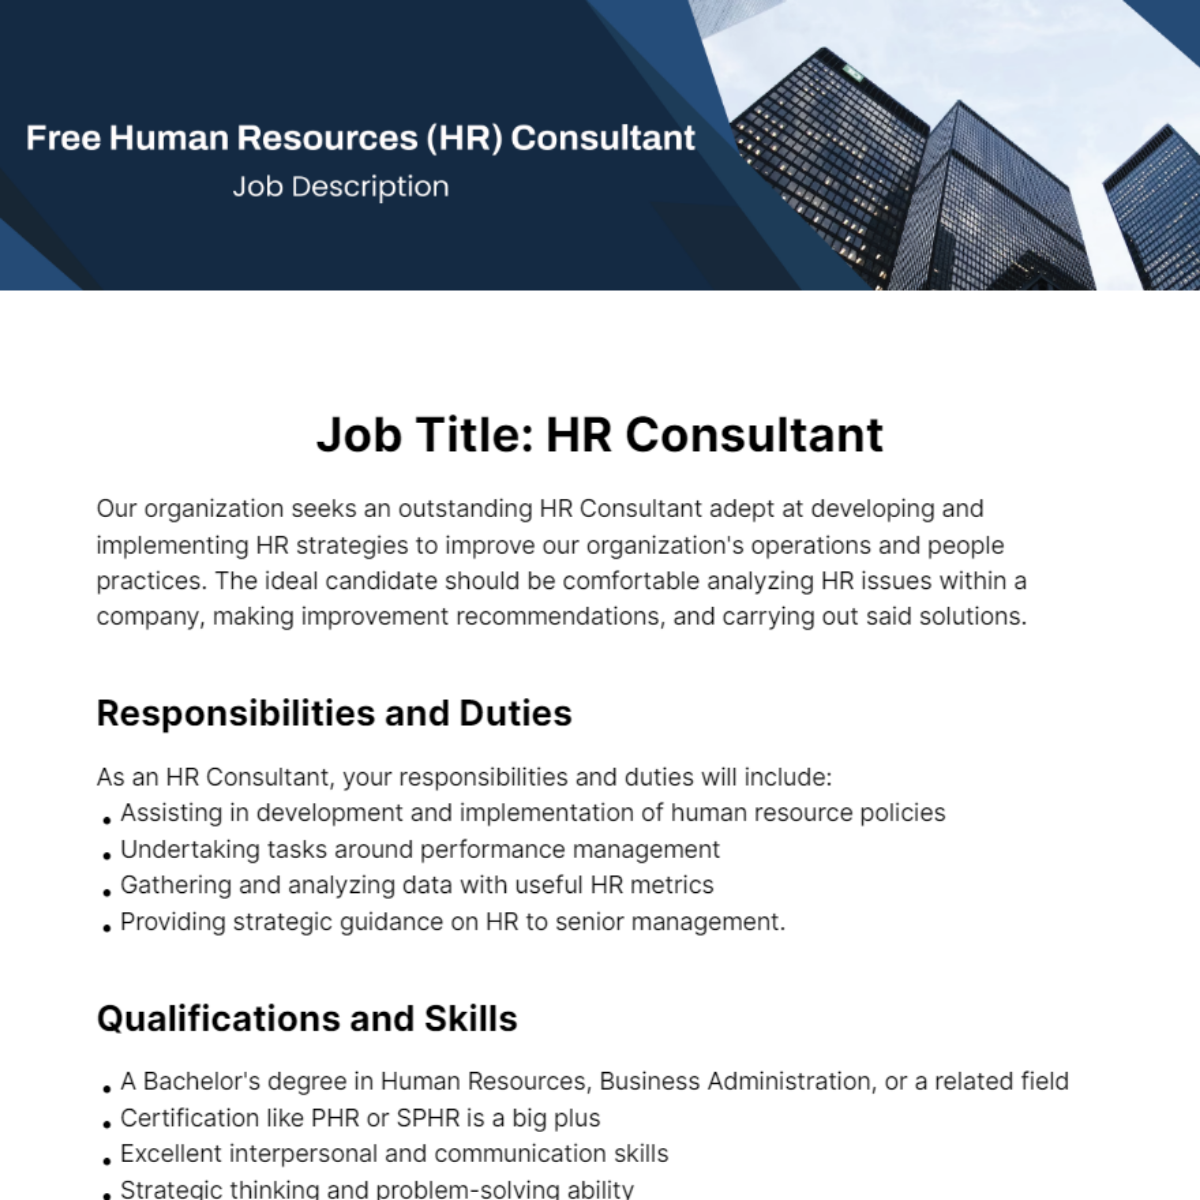 Human Resources (HR) Consultant Job Description Template